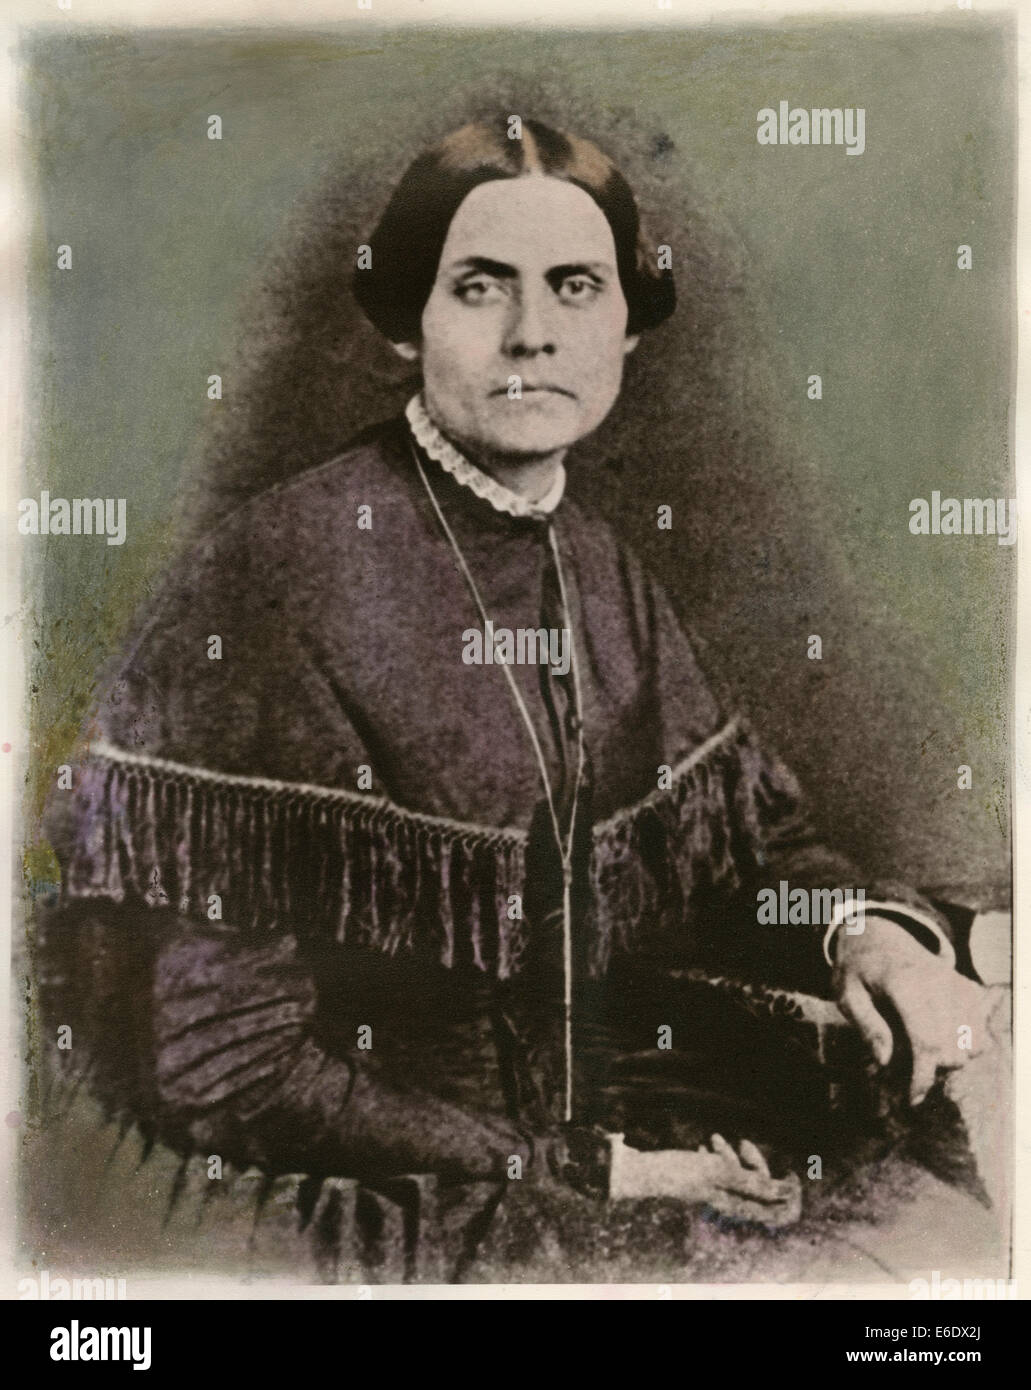 Susan B. Anthony (1820-1906), American reformer, il Leader del Movimento di suffragio, ritratto da Daguerreotype, 1852 Foto Stock